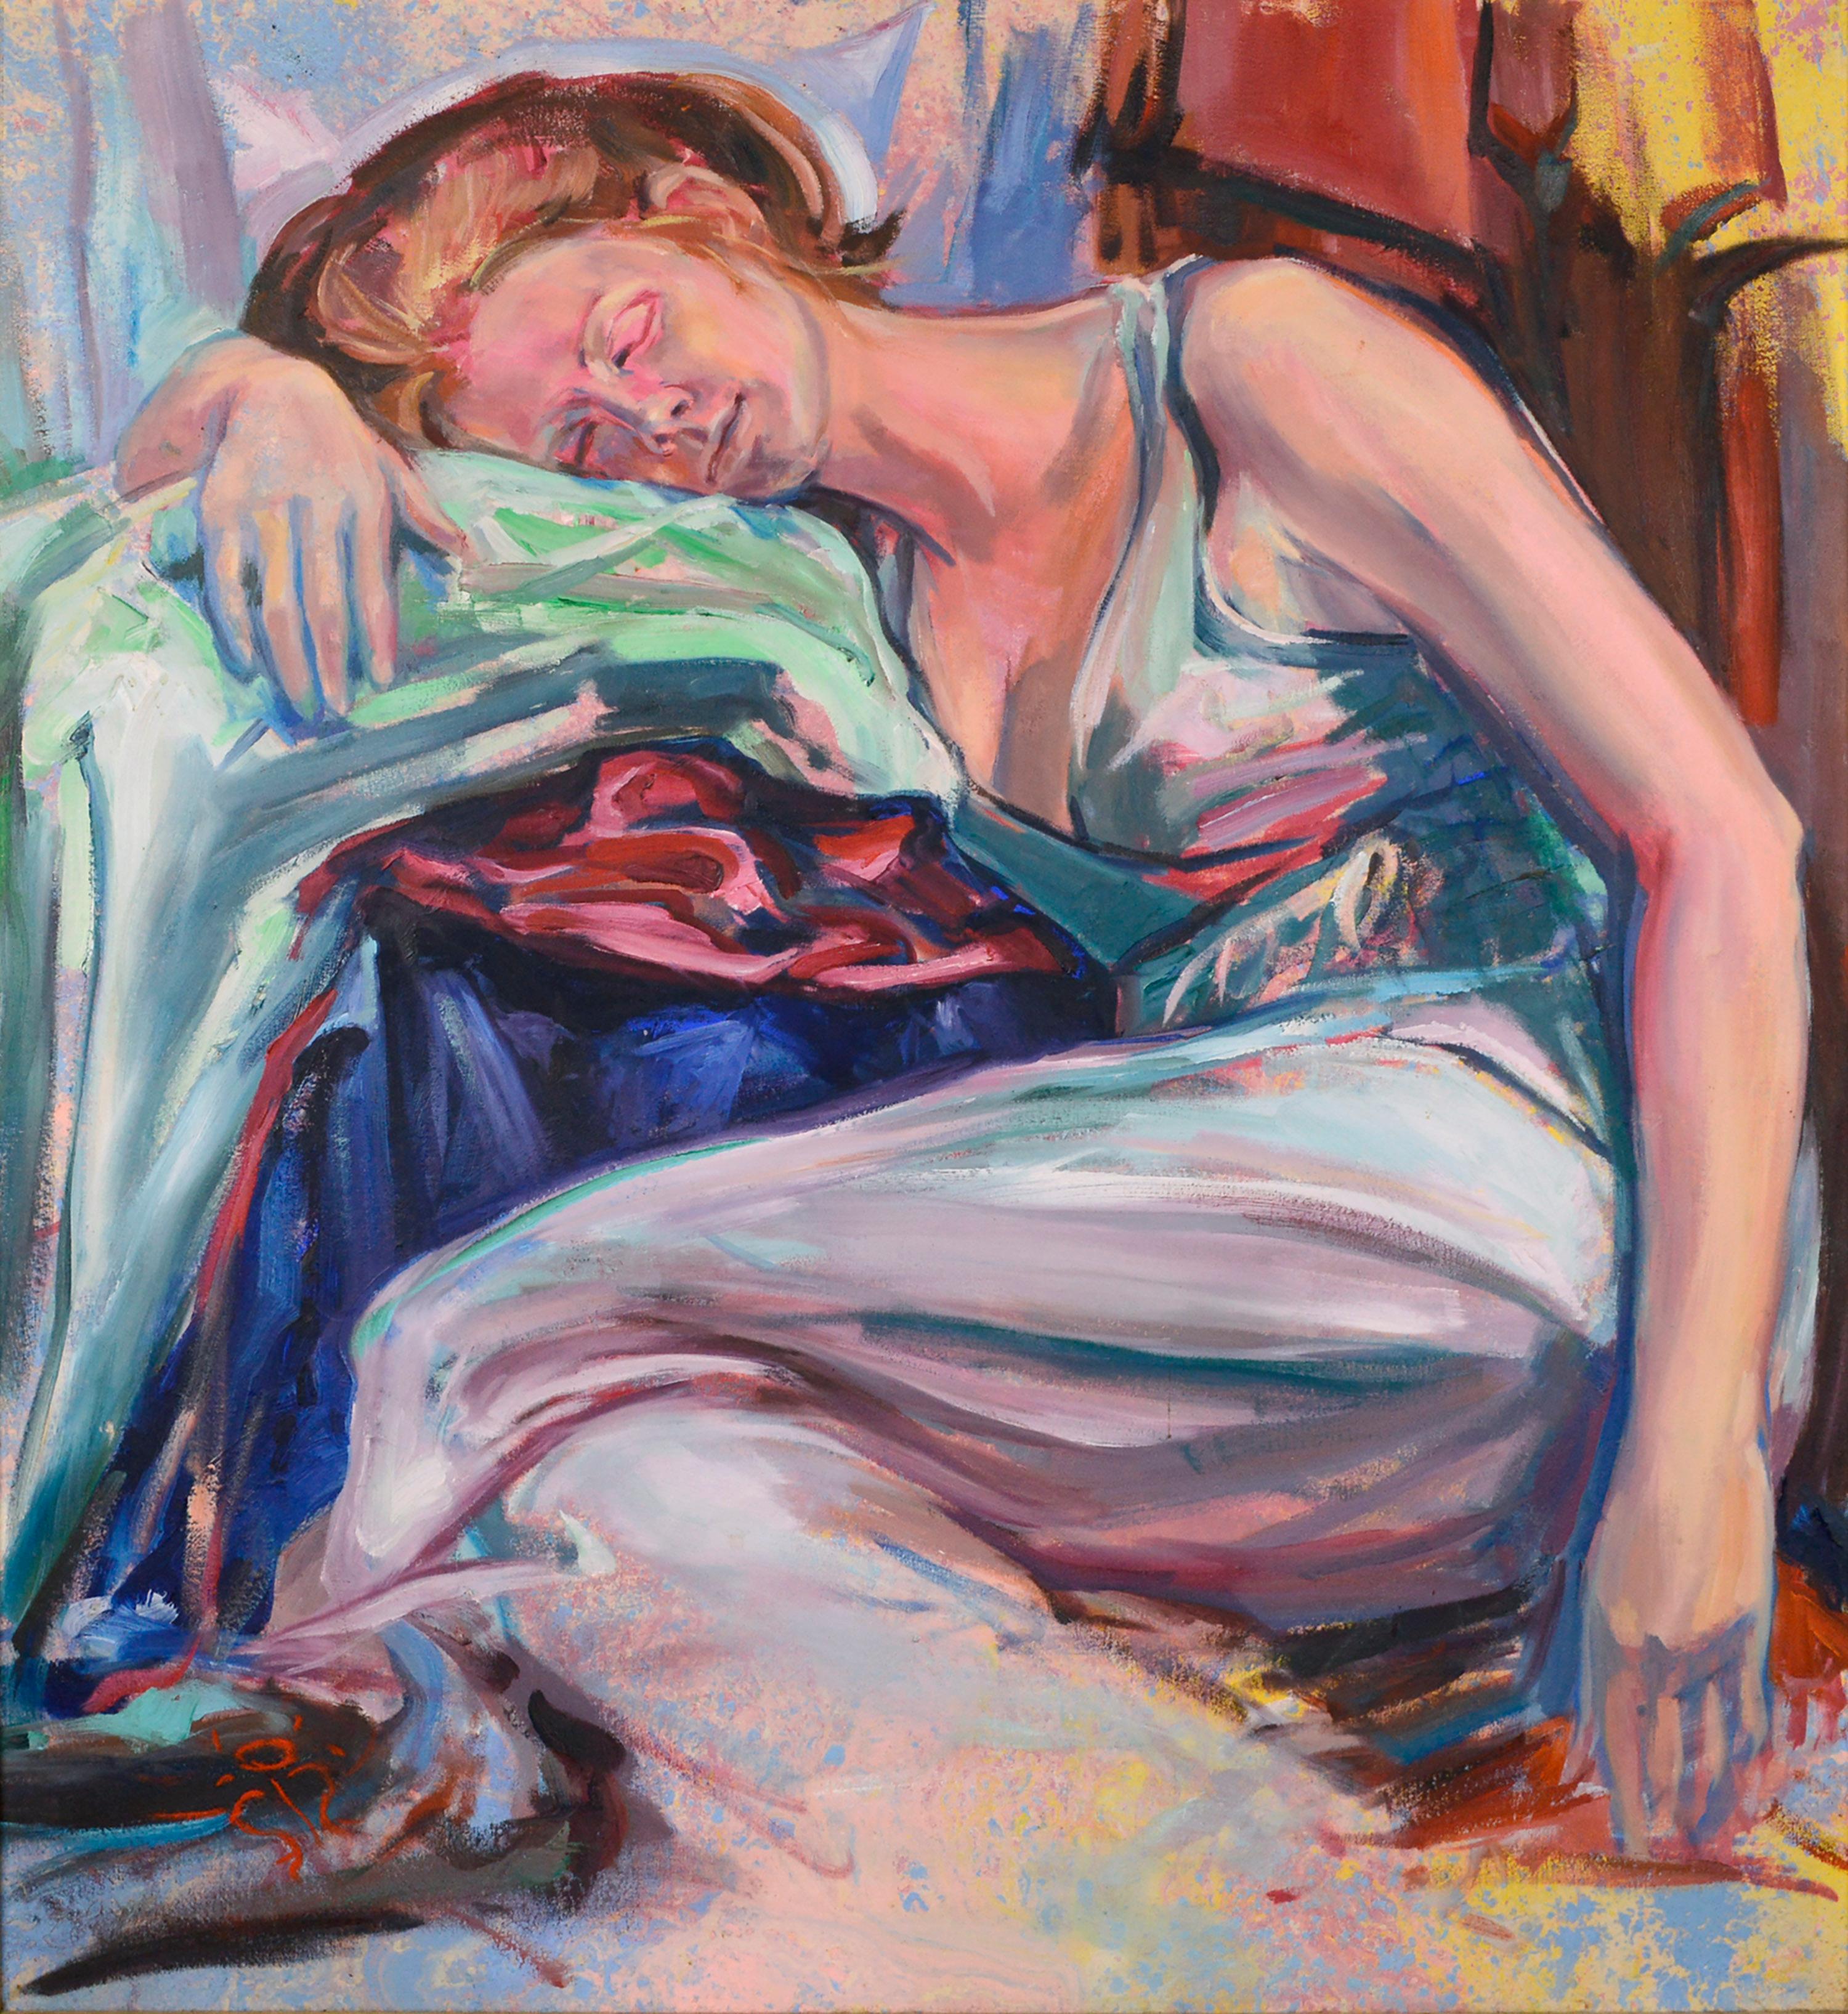 Träumen in der Farbe, expressionistische liegende weibliche Figur  – Painting von Rick Rodrigues